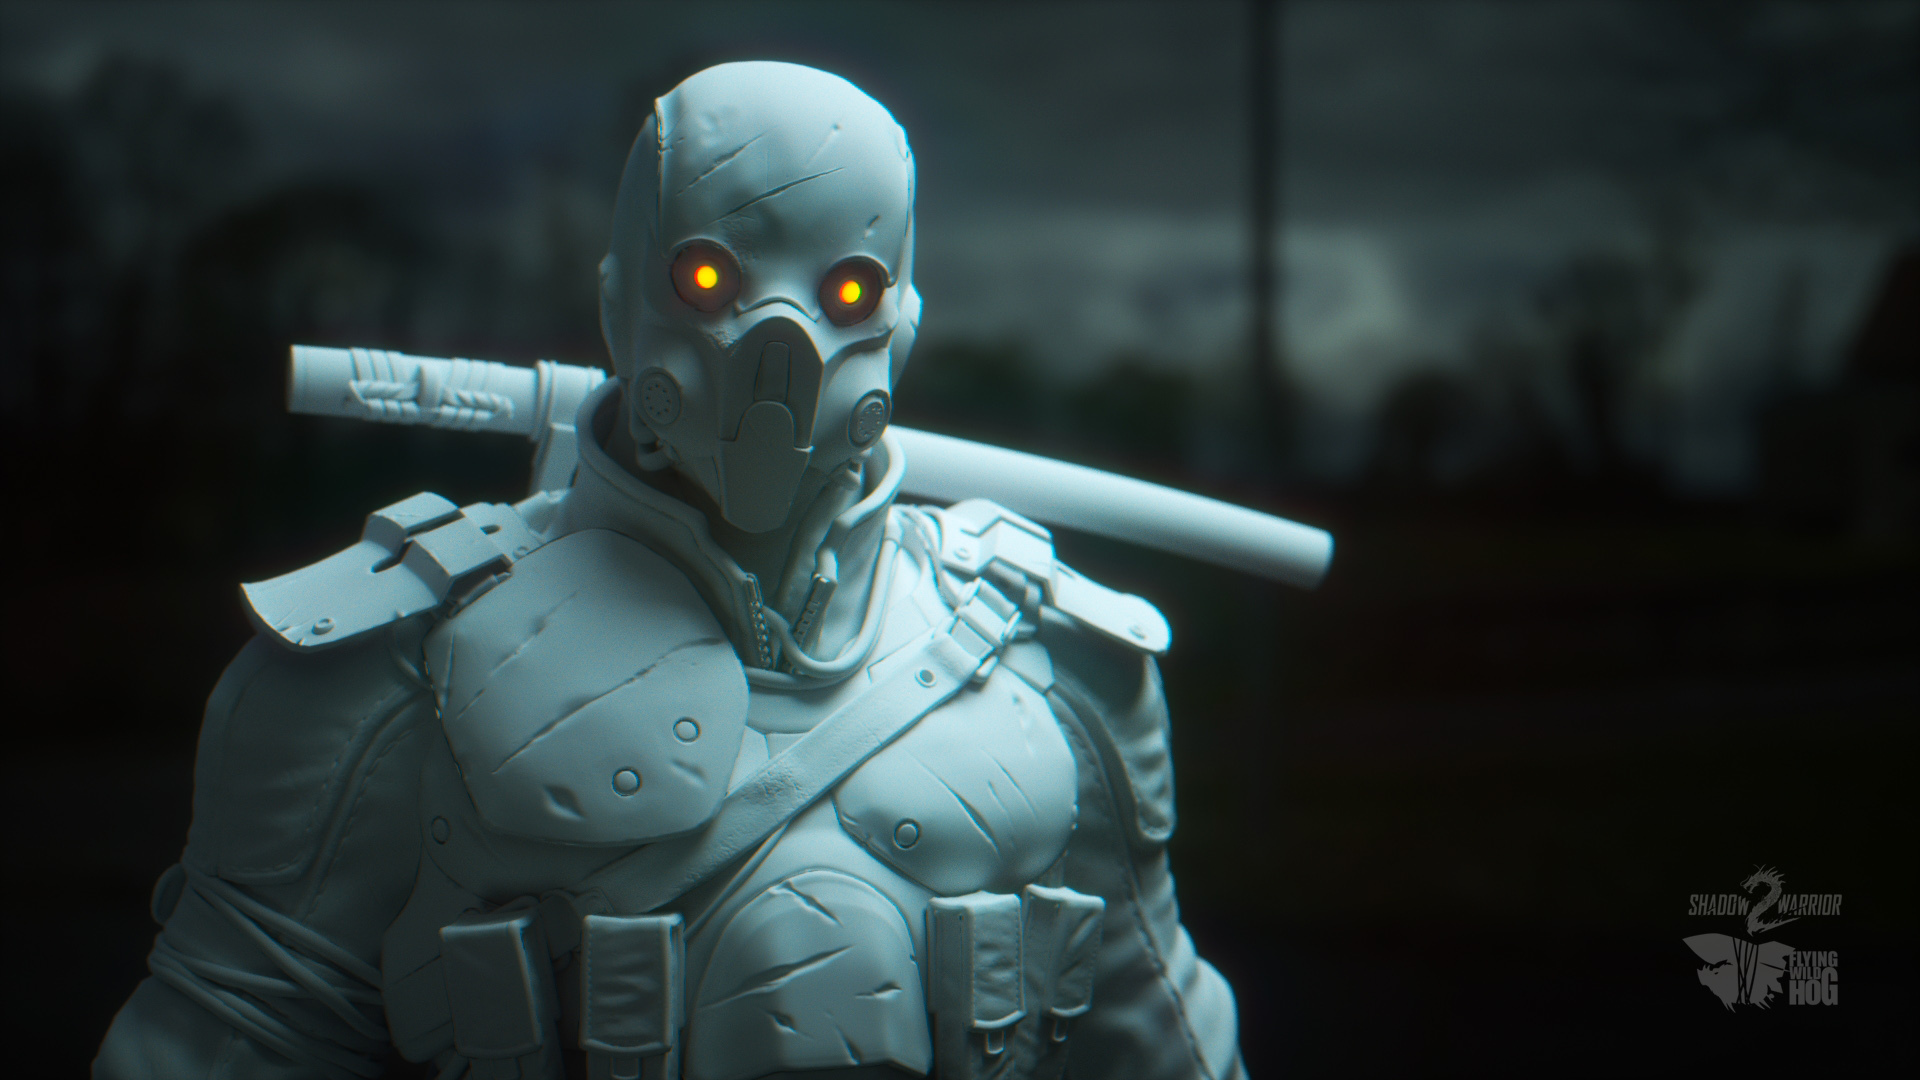 sombra guerrero fondo de pantalla,figura de acción,personaje de ficción,equipo de protección personal,hombre murciélago,captura de pantalla